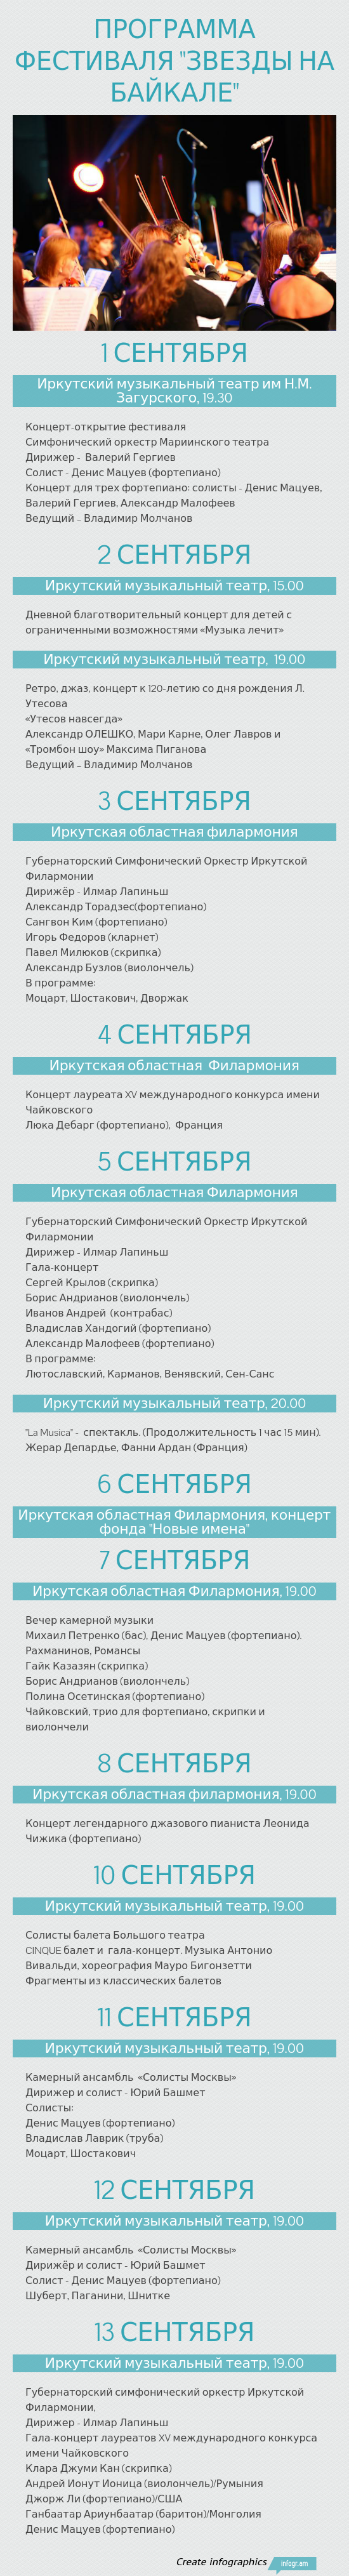 Программа фестиваля "Звезды на Байкале - Infogram